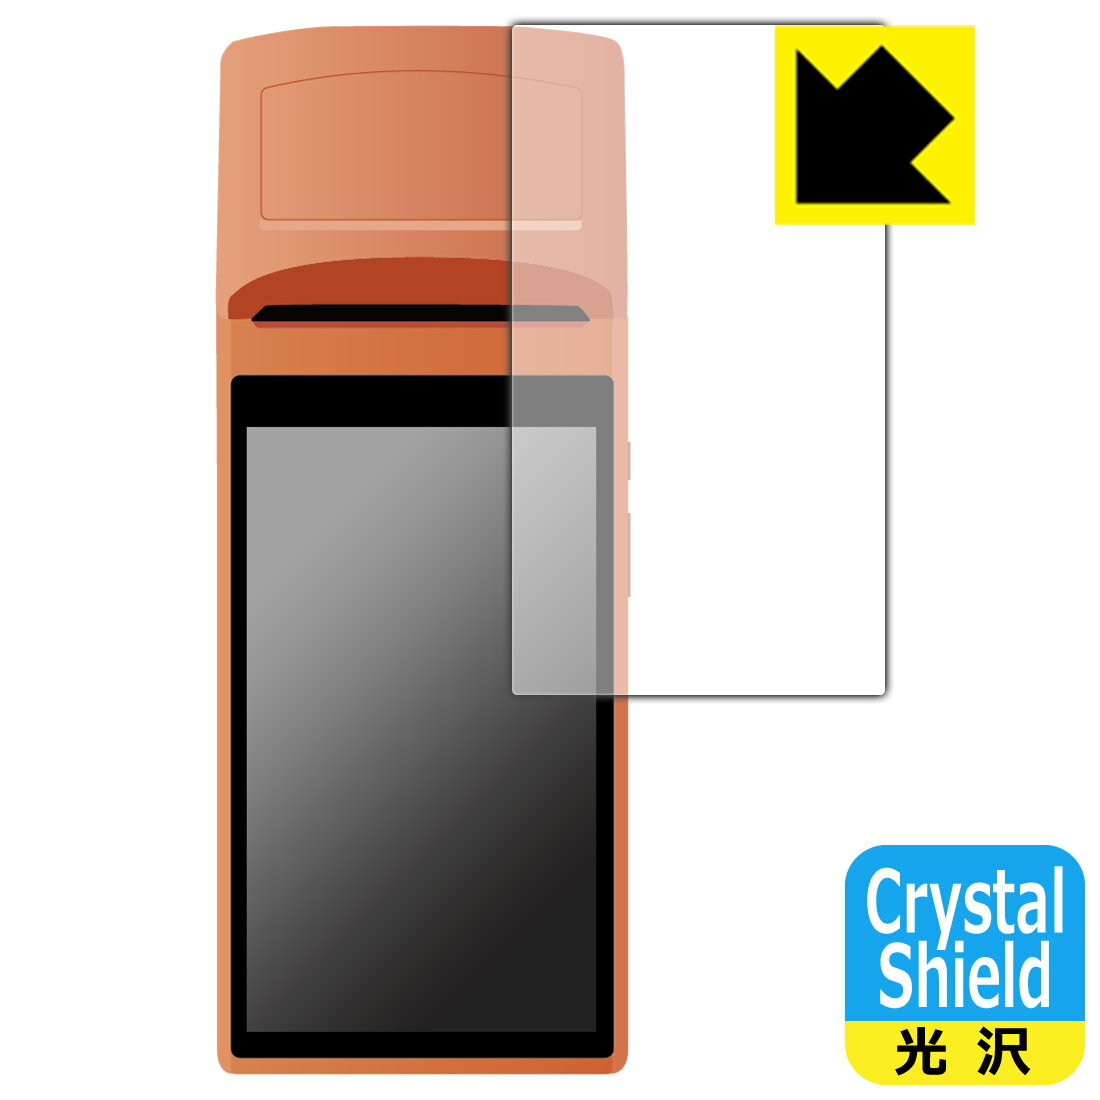 Crystal ShieldyzیtB SUNMI V1s p { А